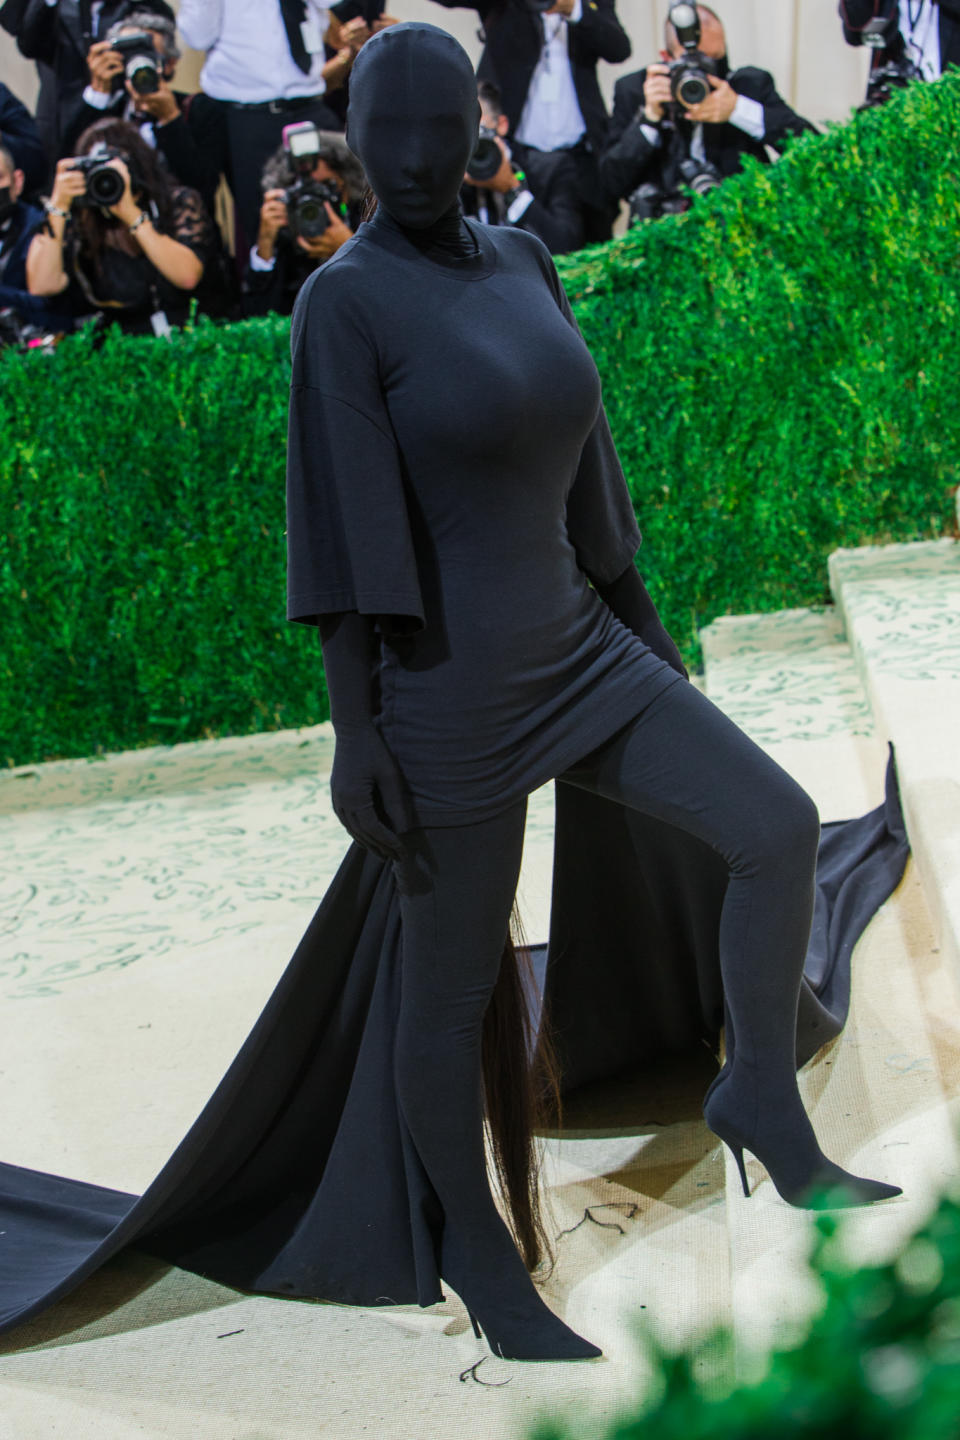 Kim Kardashian West in Balenciaga - Credit: Lexie Moreland for WWD